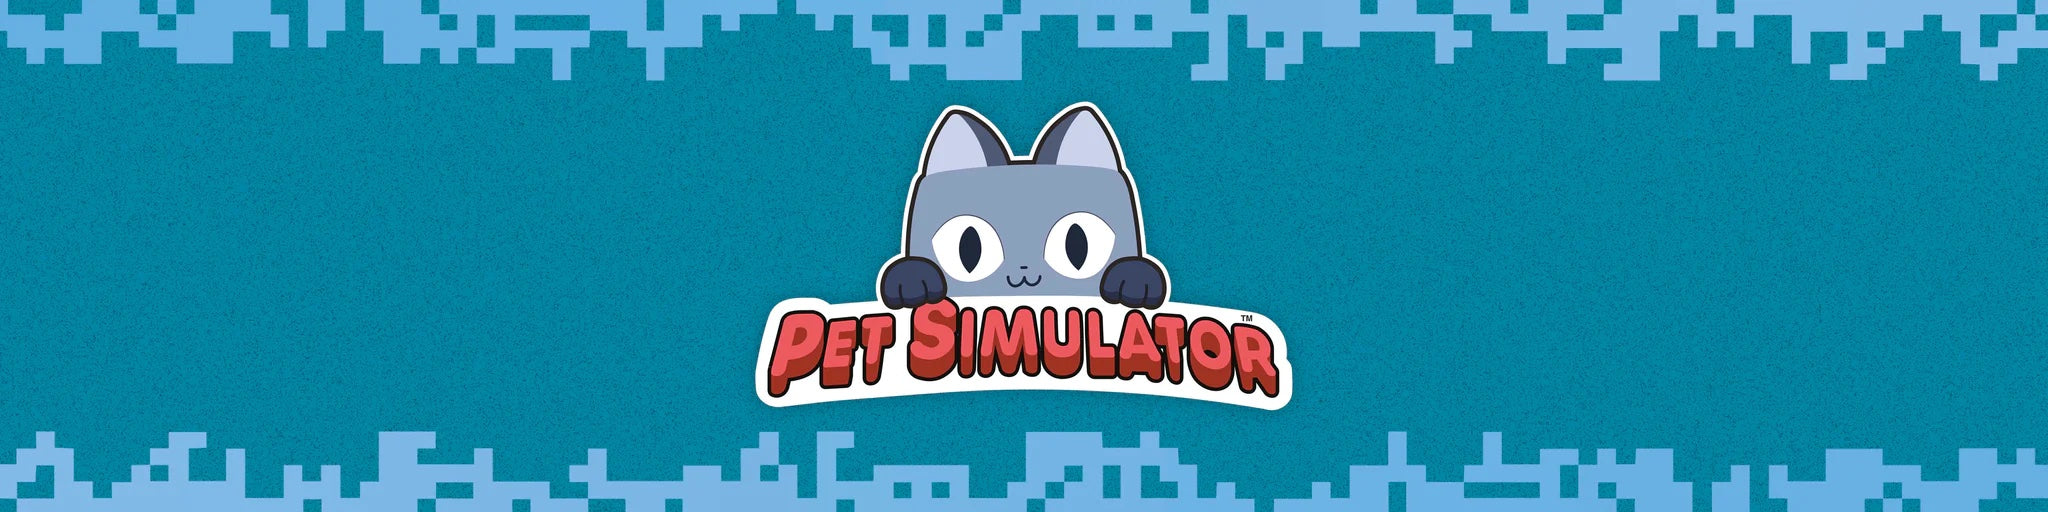 Pet Simulator X Mystery 1PK